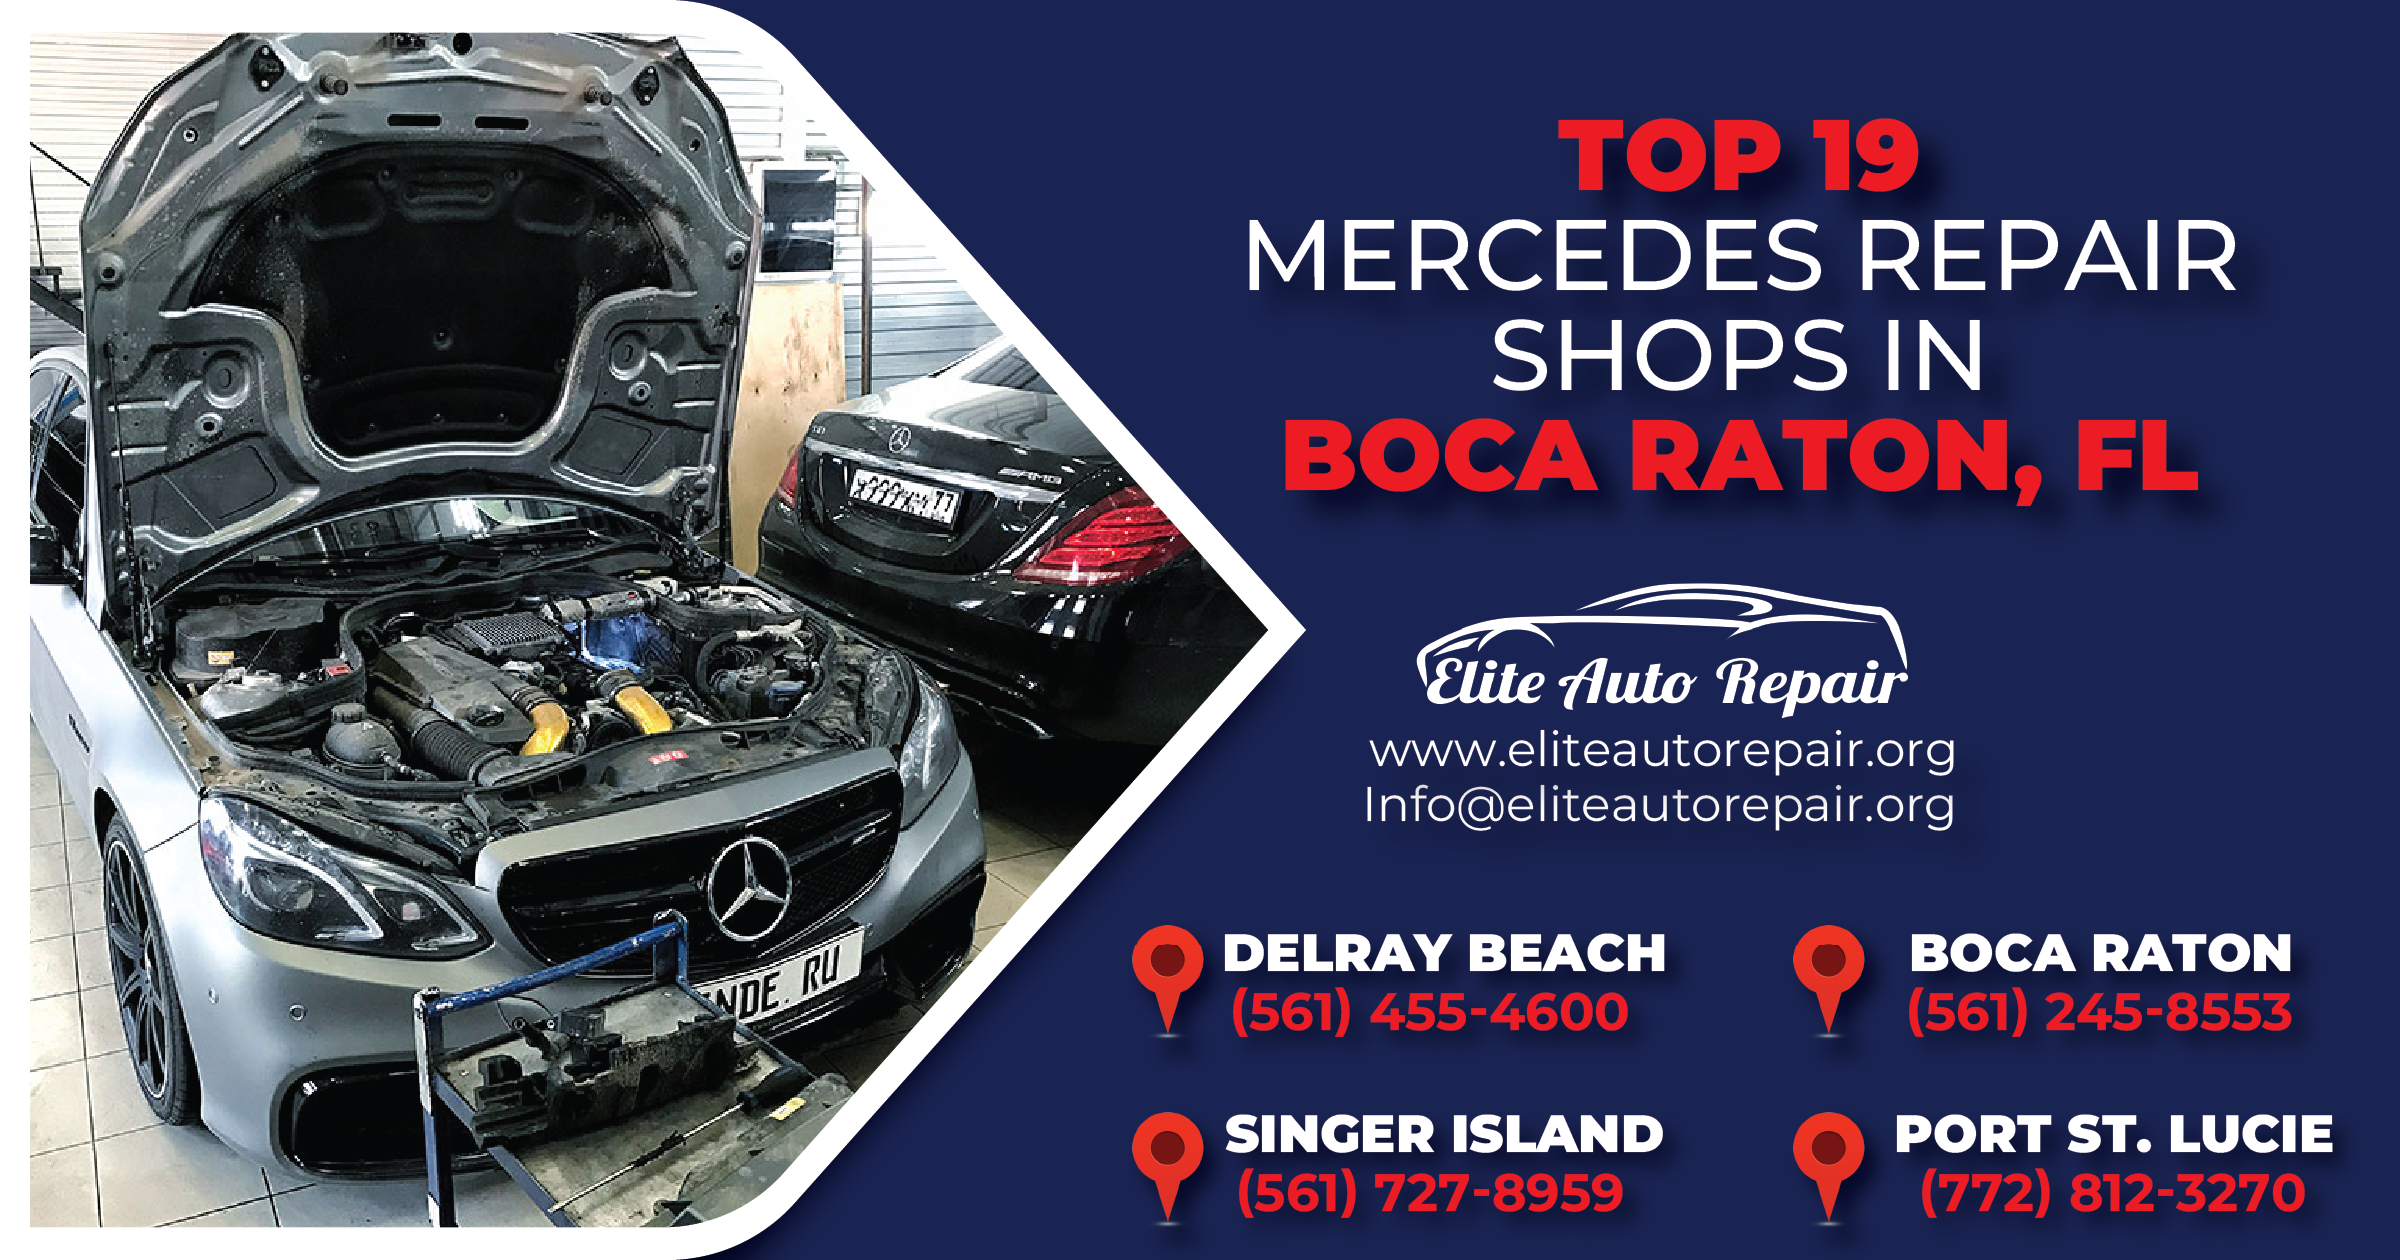 Top 19 Mercedes Repair Shops in Boca Raton, FL